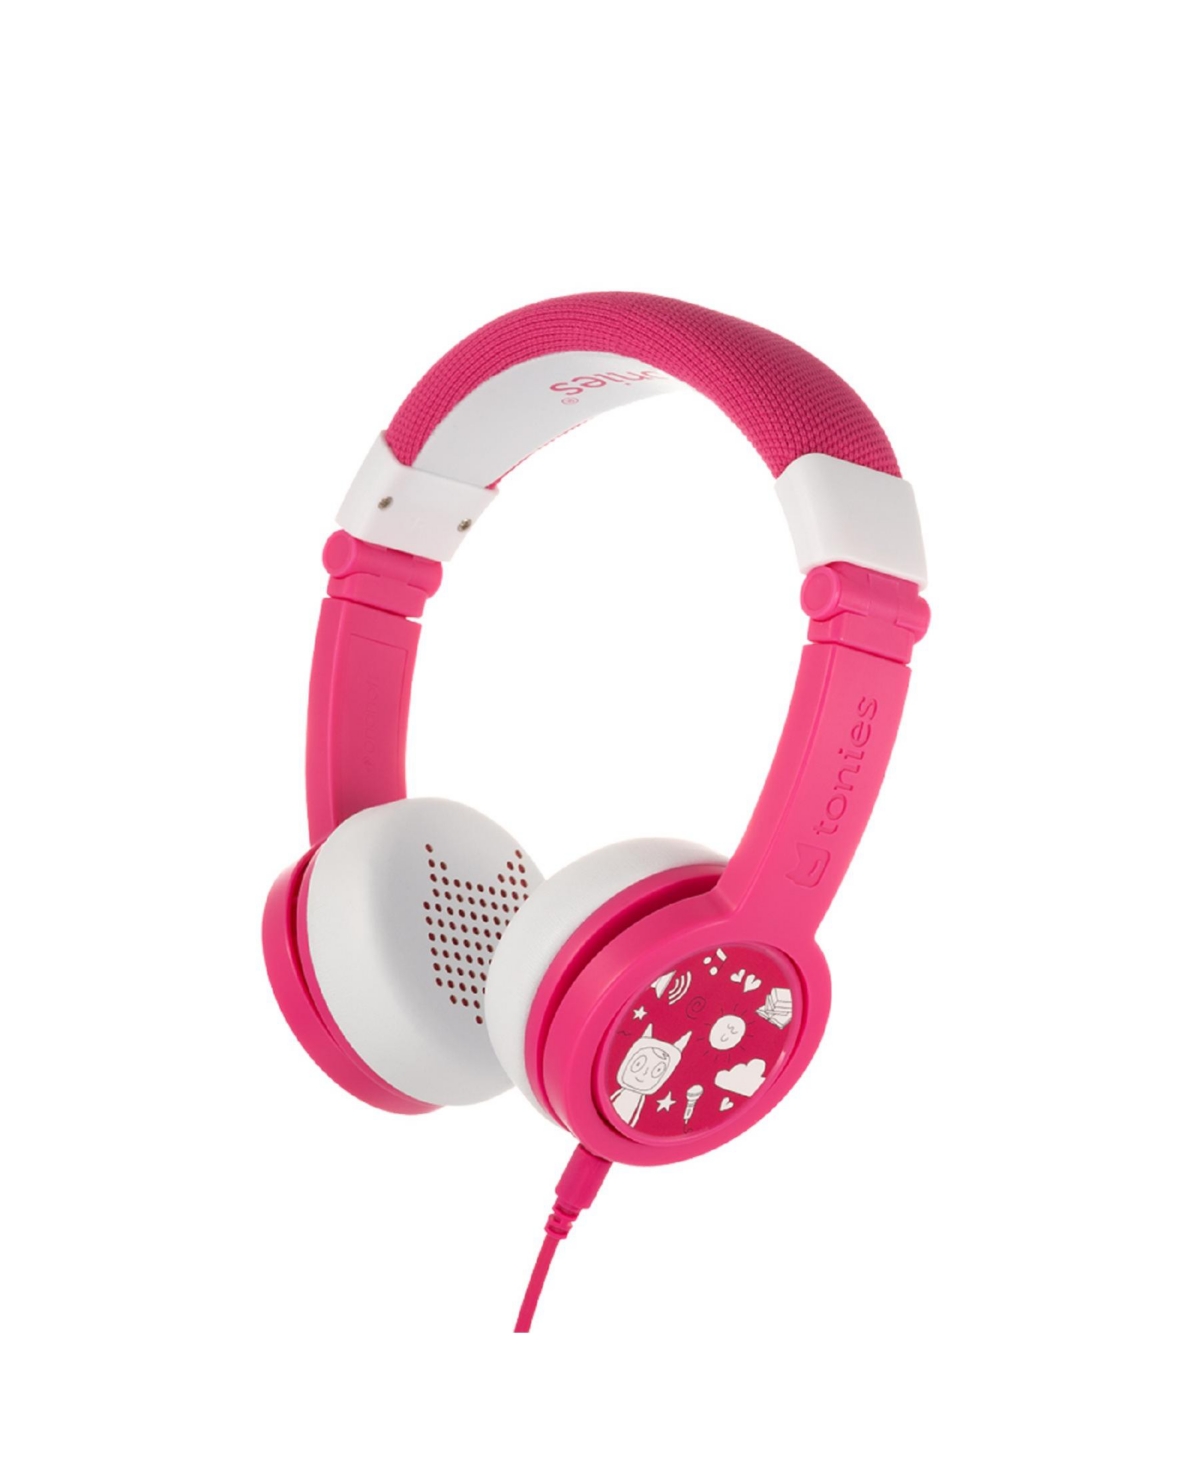 Tonies Headphones In Pink